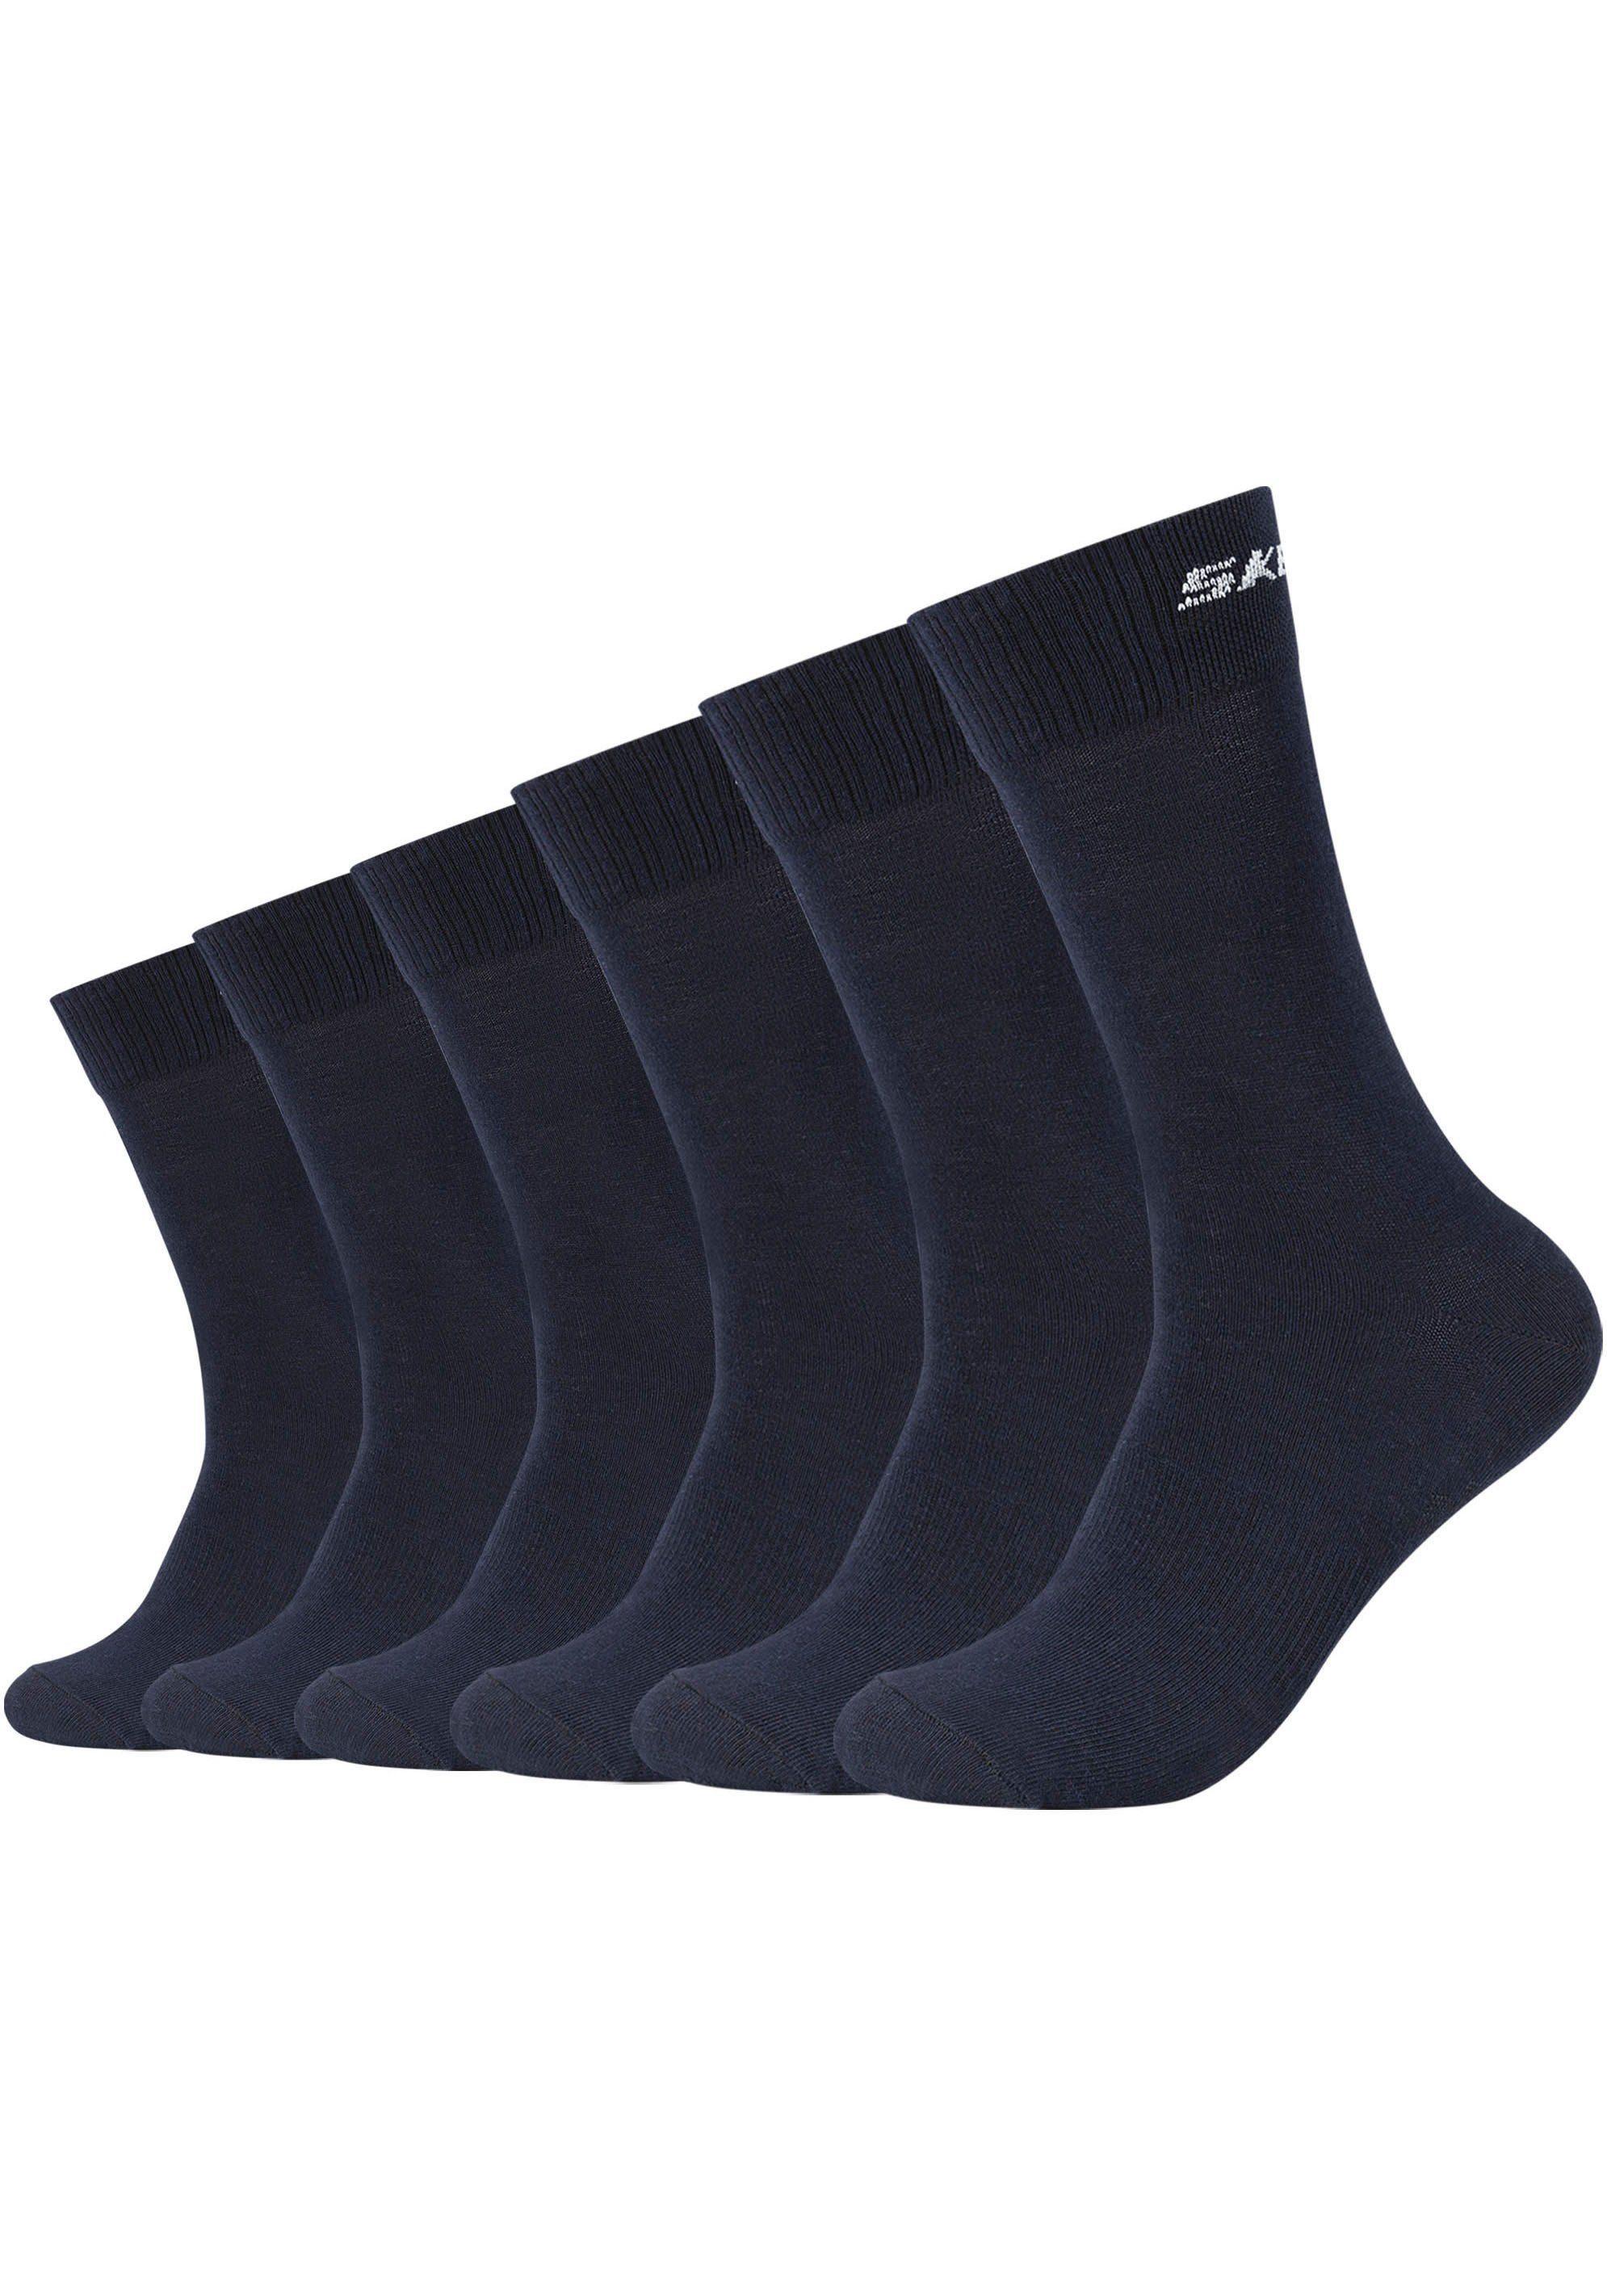 navy Zehenbereich Socken 6-Paar) (Packung, langlebig: Robust Fersen- und Skechers verstärkter und